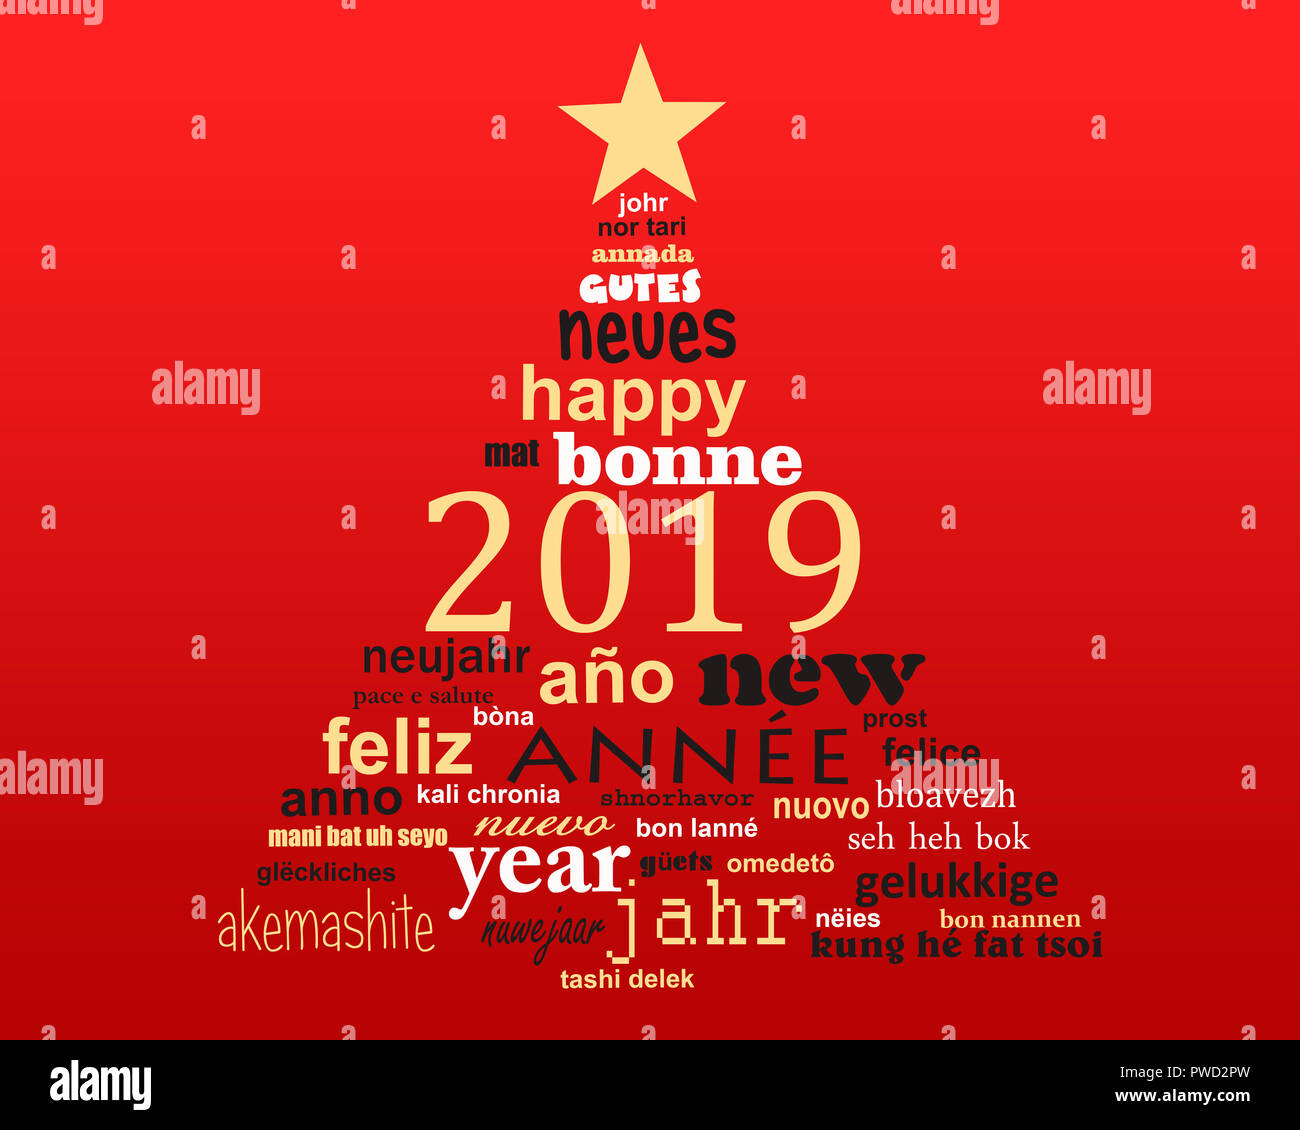 2019 Neues Jahr mehrsprachiger Text word cloud Grußkarte in der Form eines Weihnachtsbaumes Stockfoto